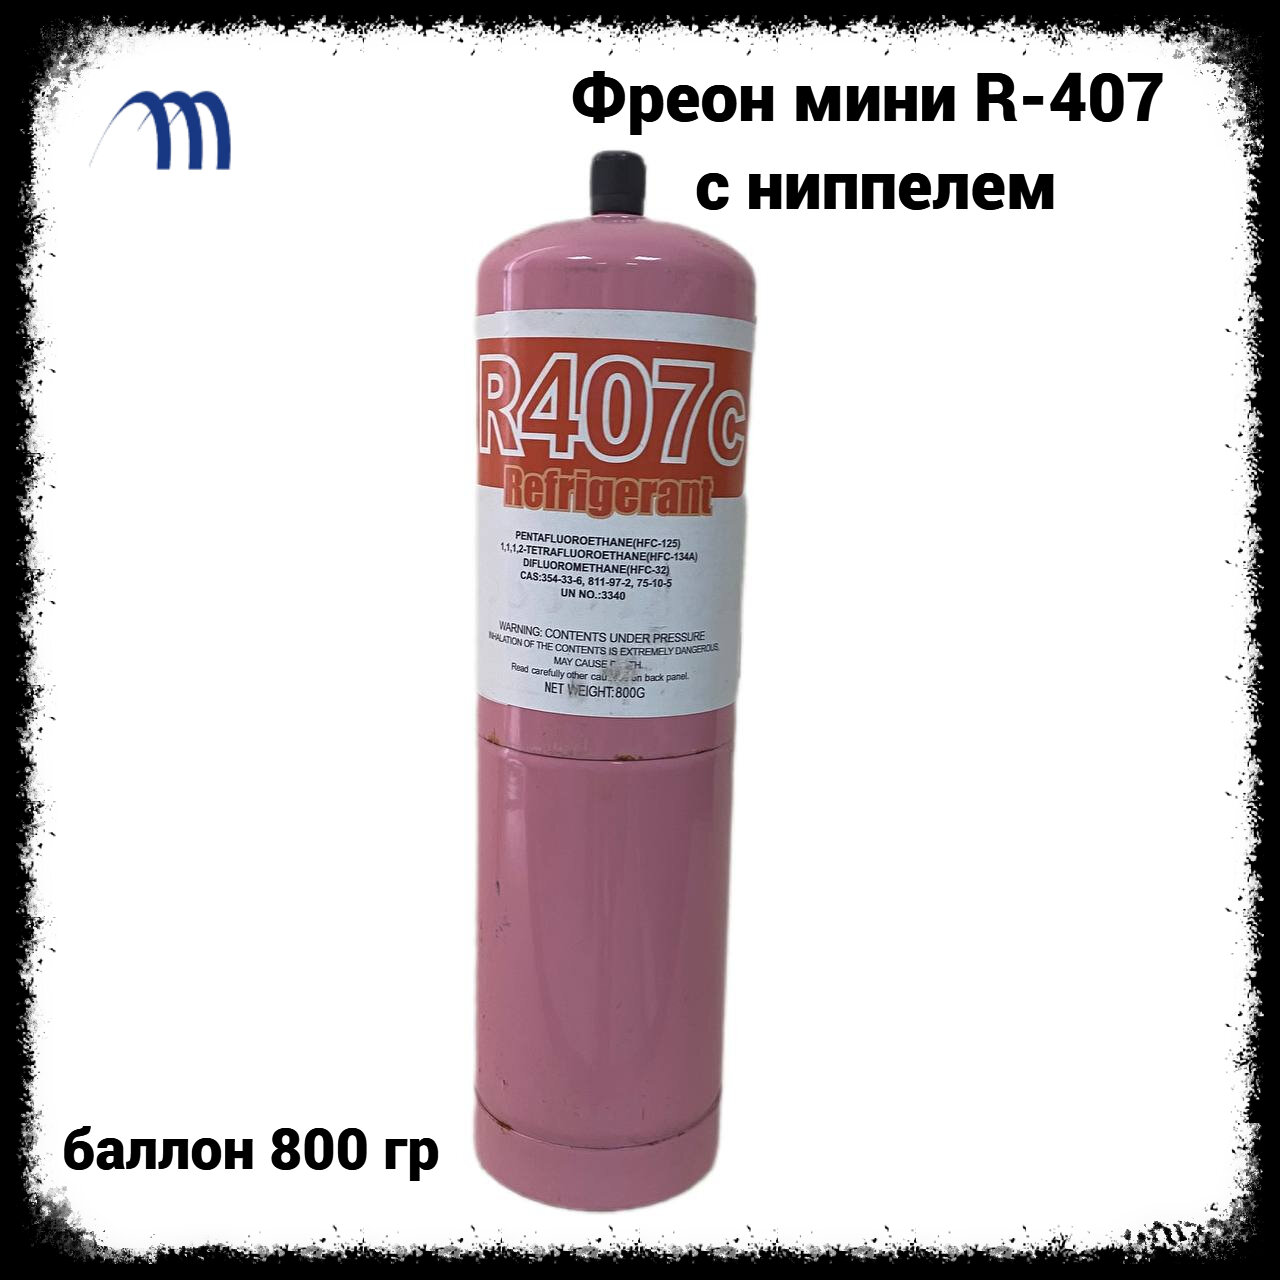 Фреон для заправки кондиционеров R-407 (баллон 08 кг) с ниппелем